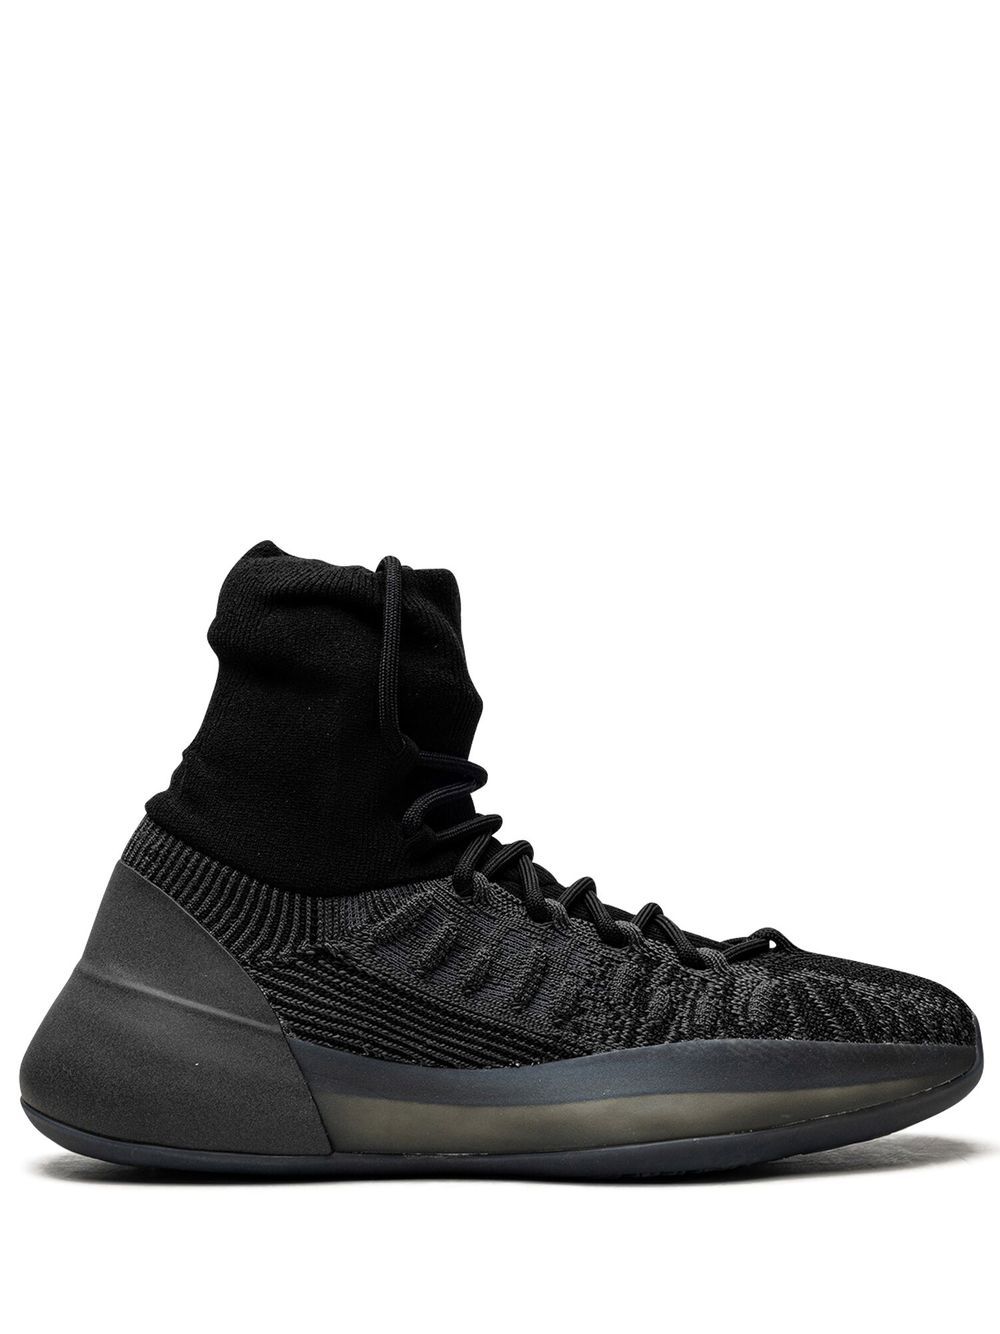 adidas Yeezy YEEZY Basketball Knit "Onyx" sneakers - Black von adidas Yeezy